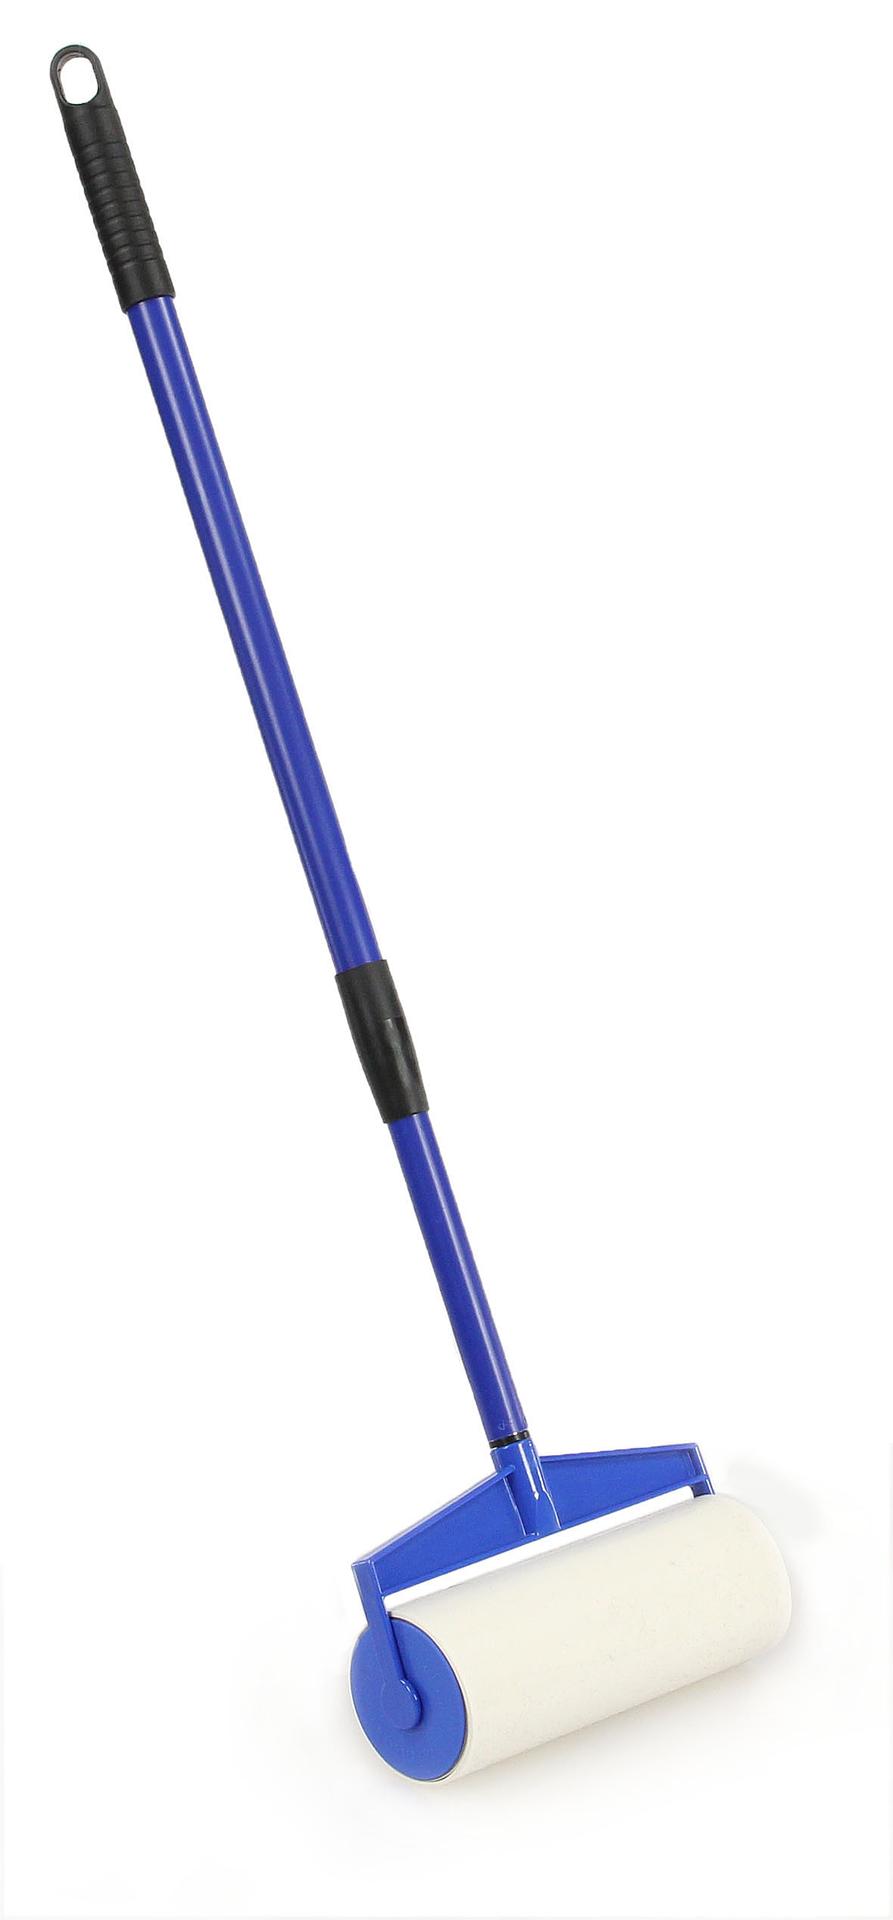 Rouleau de rechange pour la brosse enlève-poil Blue - 11 m